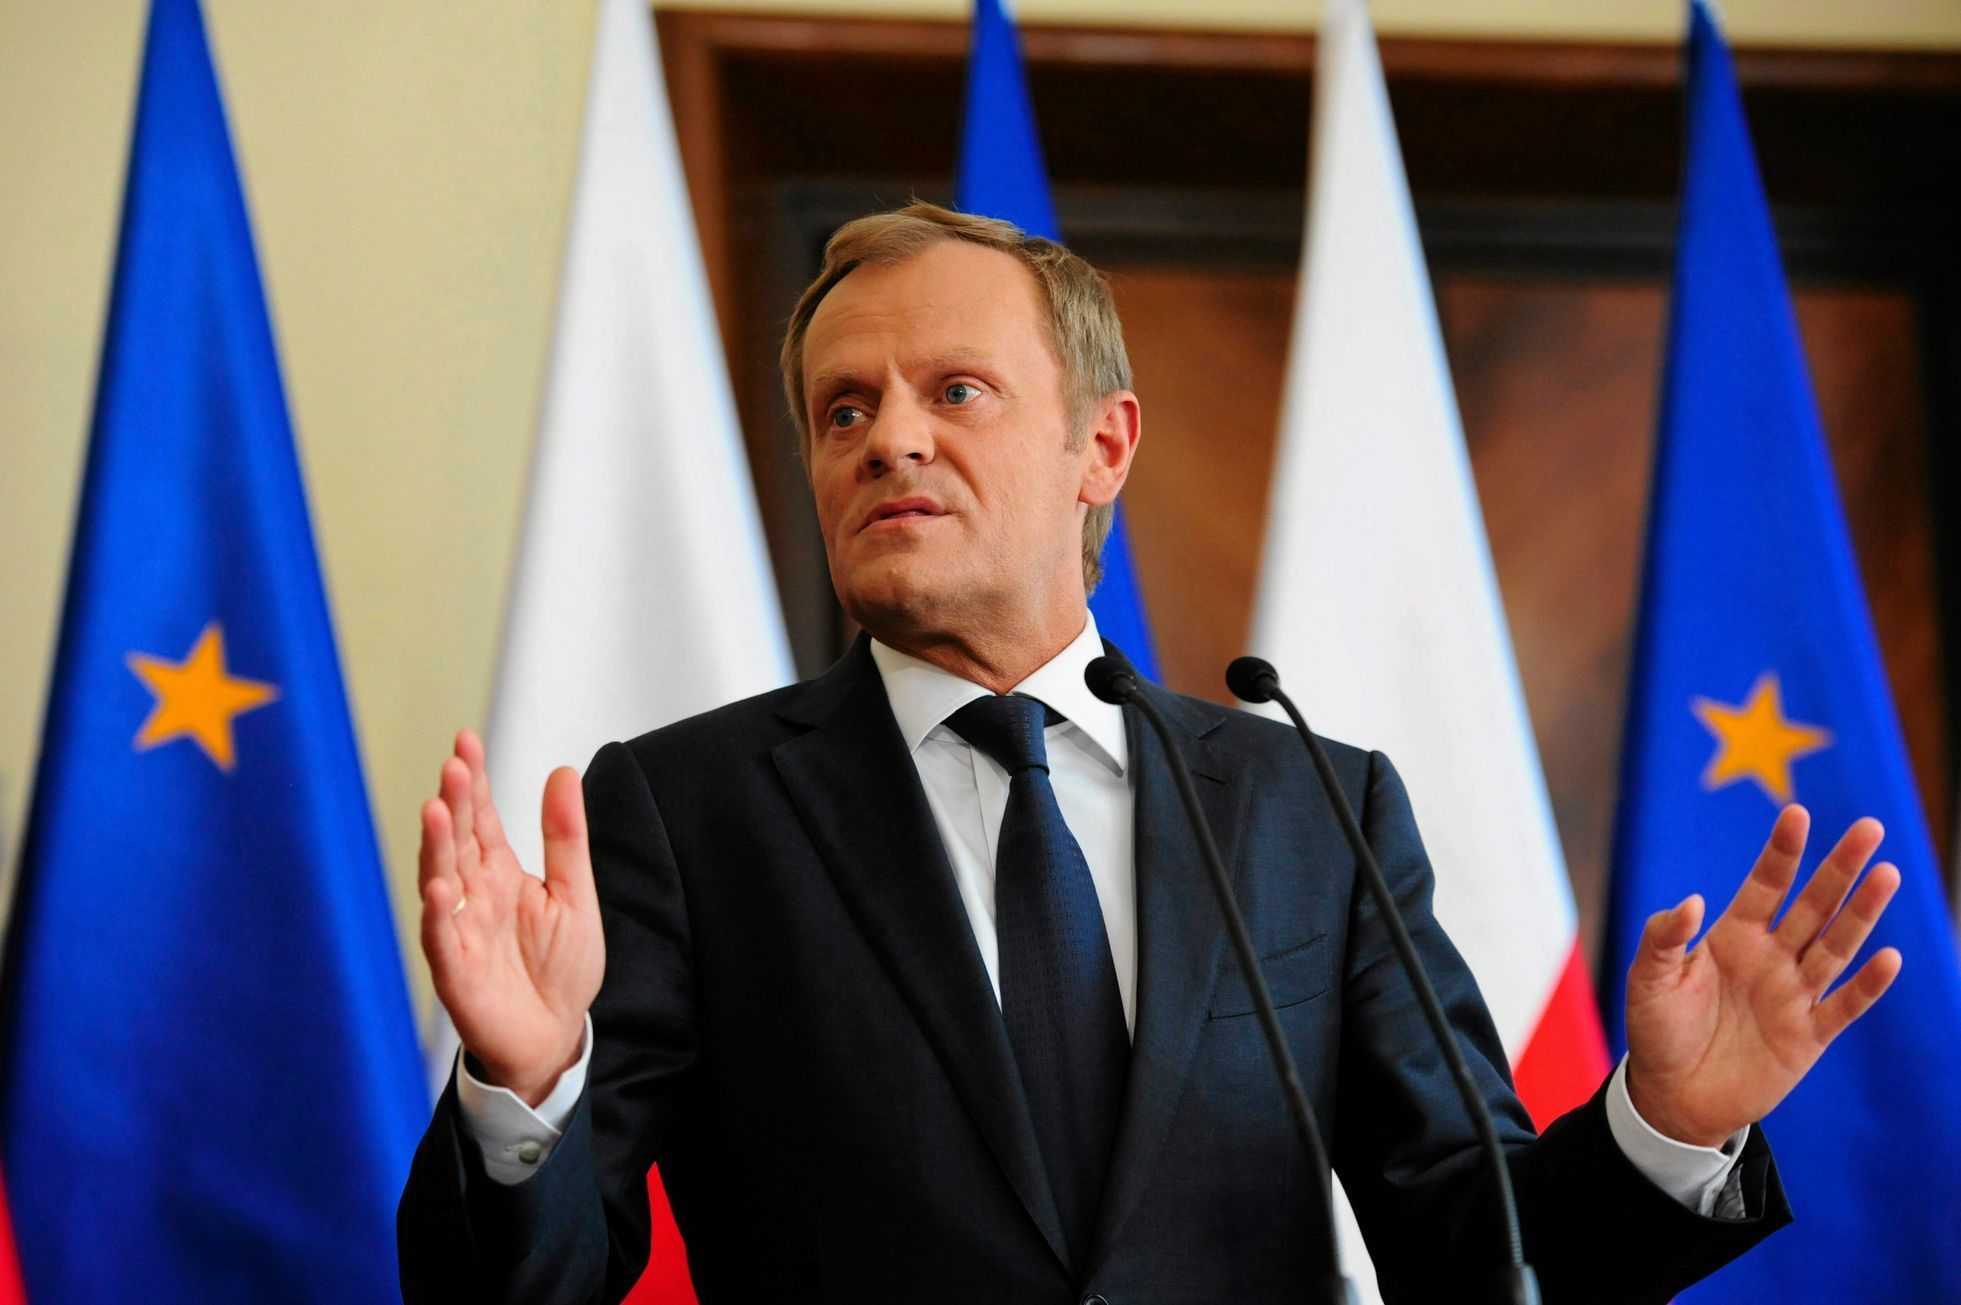 Polský premiér Donald Tusk v pondělí na tiskové konferenci uvedl, že nemá důvod k odvolání ministra vnitra.